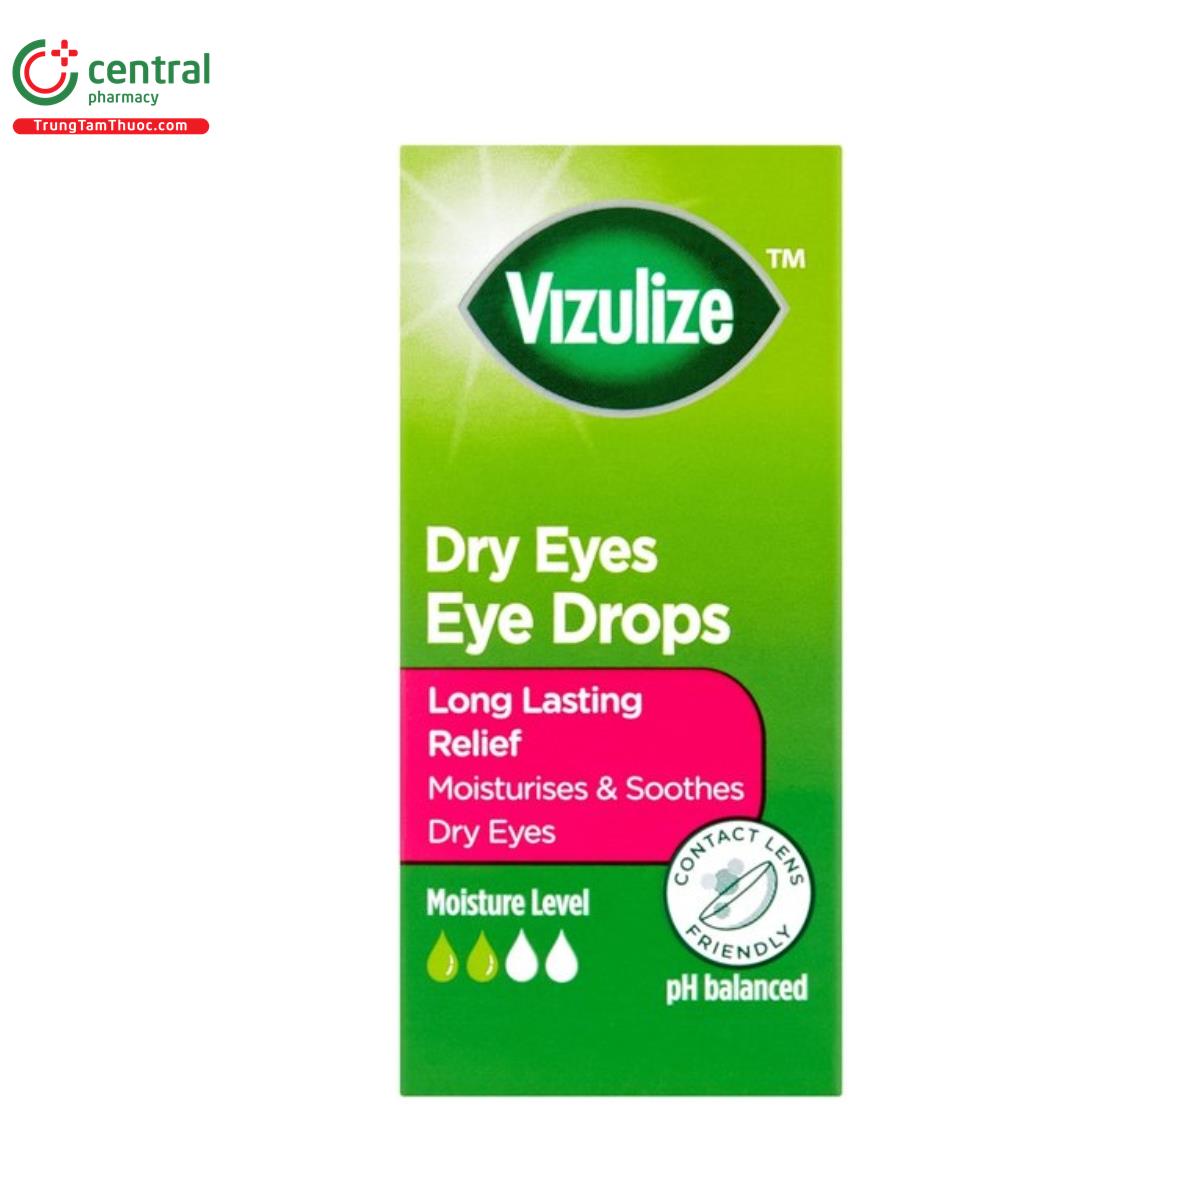 vizulize dry eyes eye drops 5 B0631